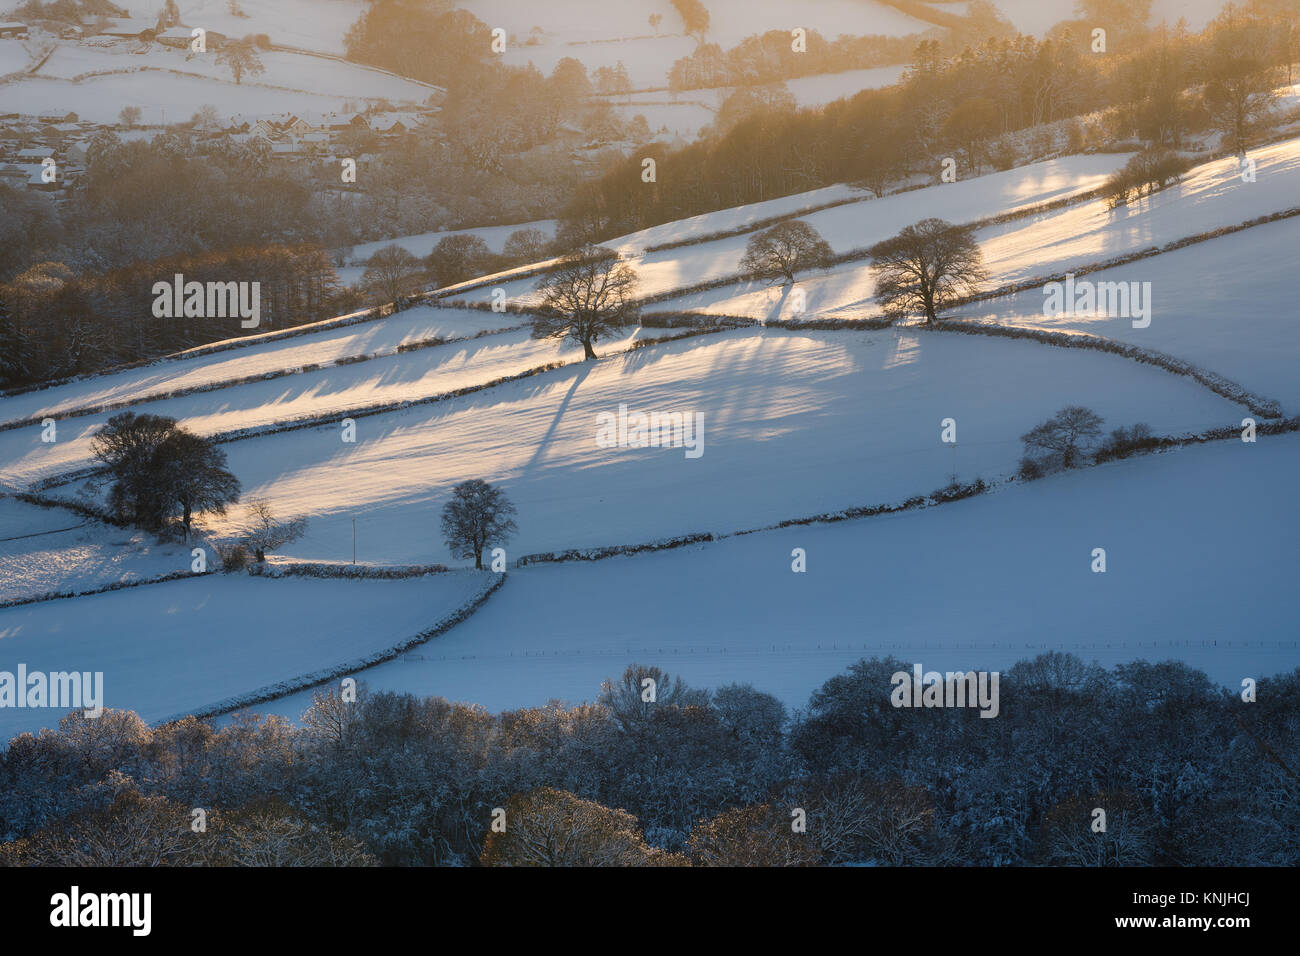 Paxton's Tower. En el Reino Unido. 11 de diciembre de 2017. Mirando a través de una cubierta de nieve landsape al atardecer, árboles desnudos proyecte sombras sobre los campos. Parque Nacional de Brecon Beacons, Gales. Crédito: señala Buckley/Alamy Live News Foto de stock